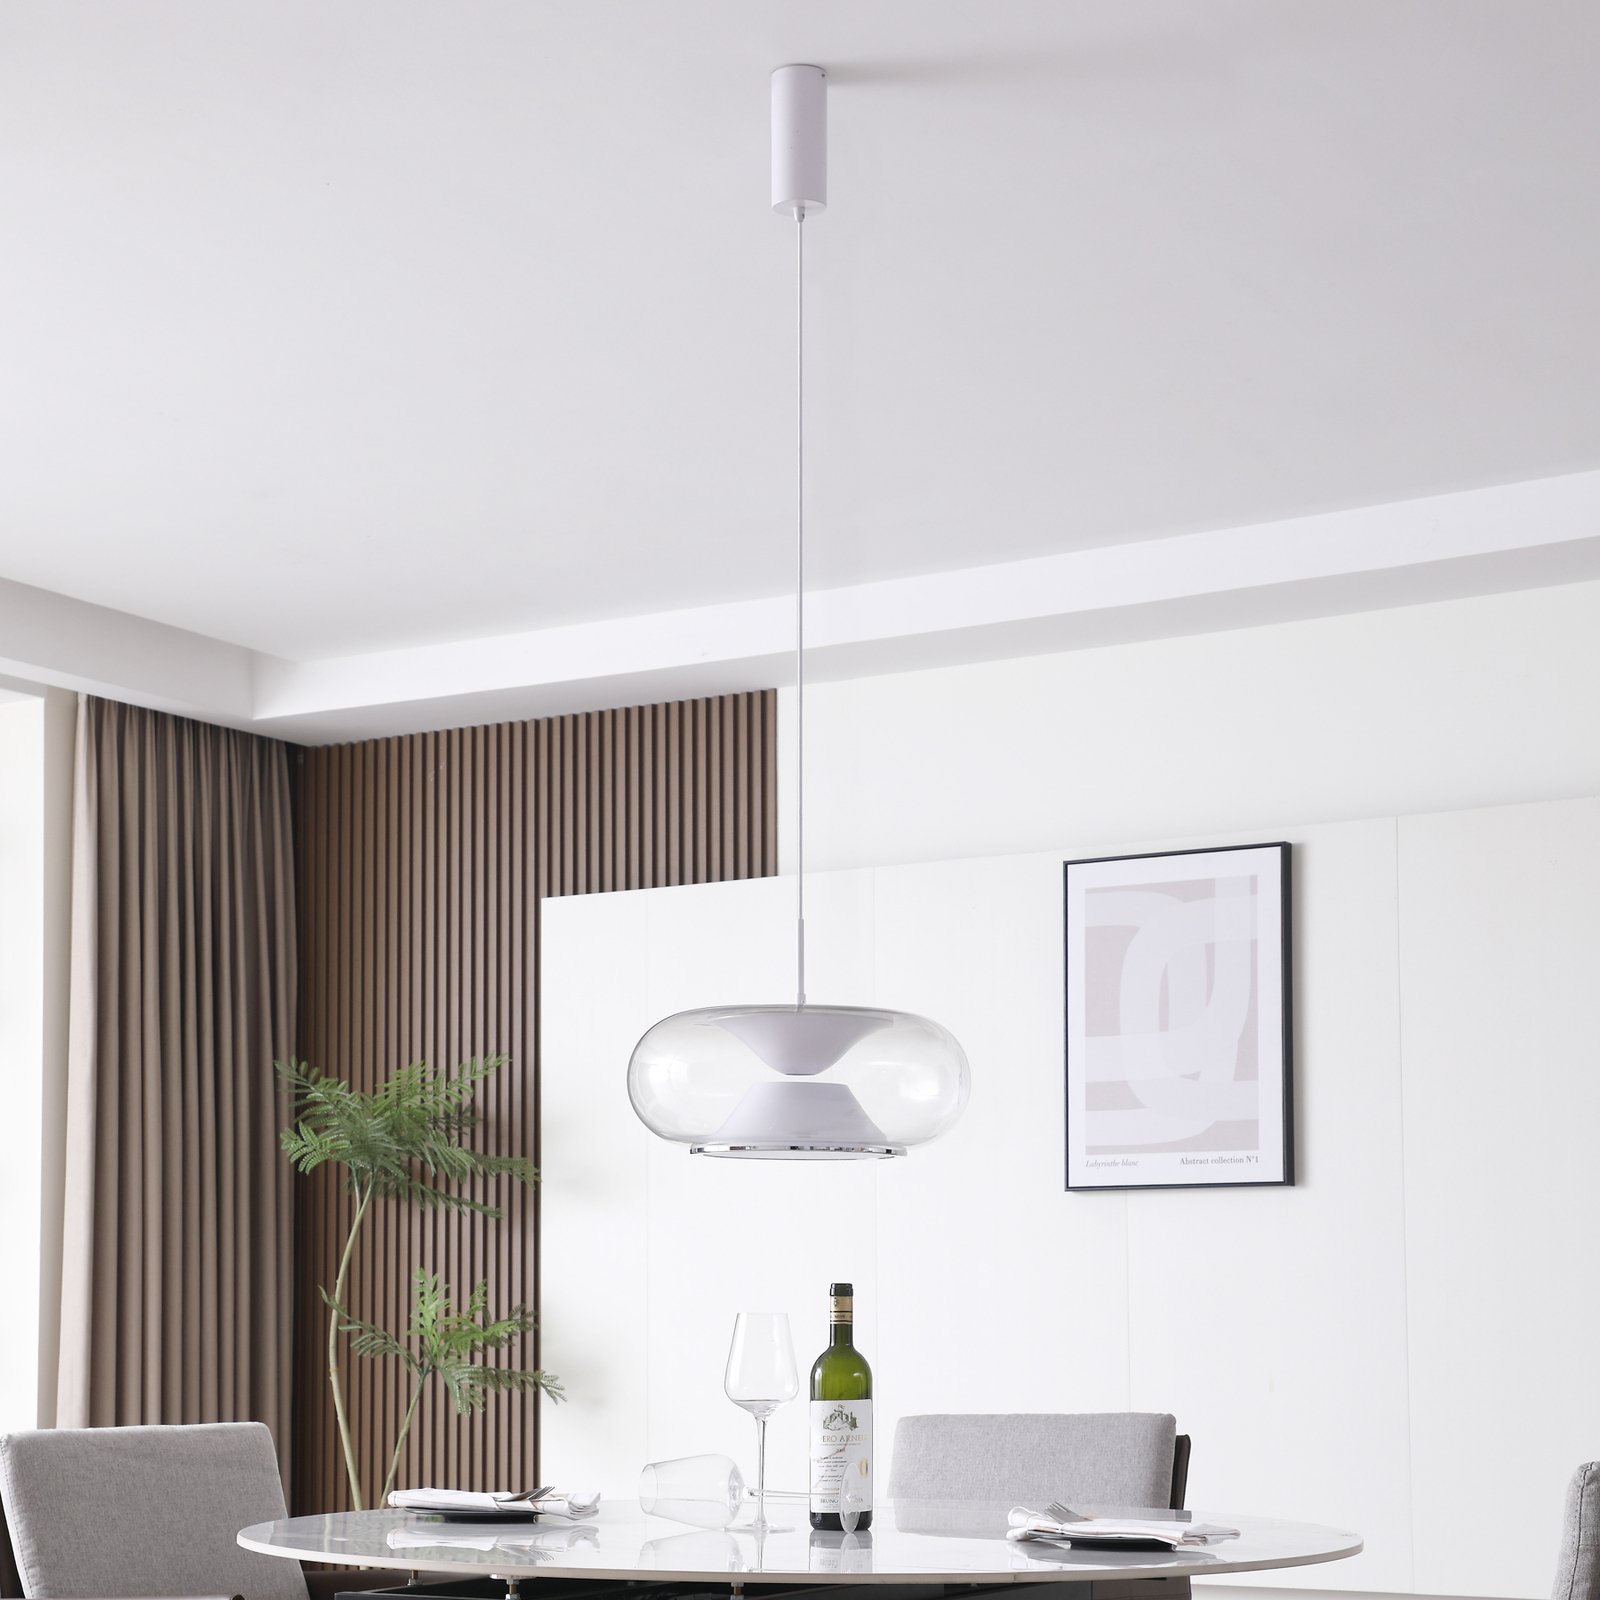 Lucande Orasa LED hanglamp, glas, wit/helder, Ø 43 cm